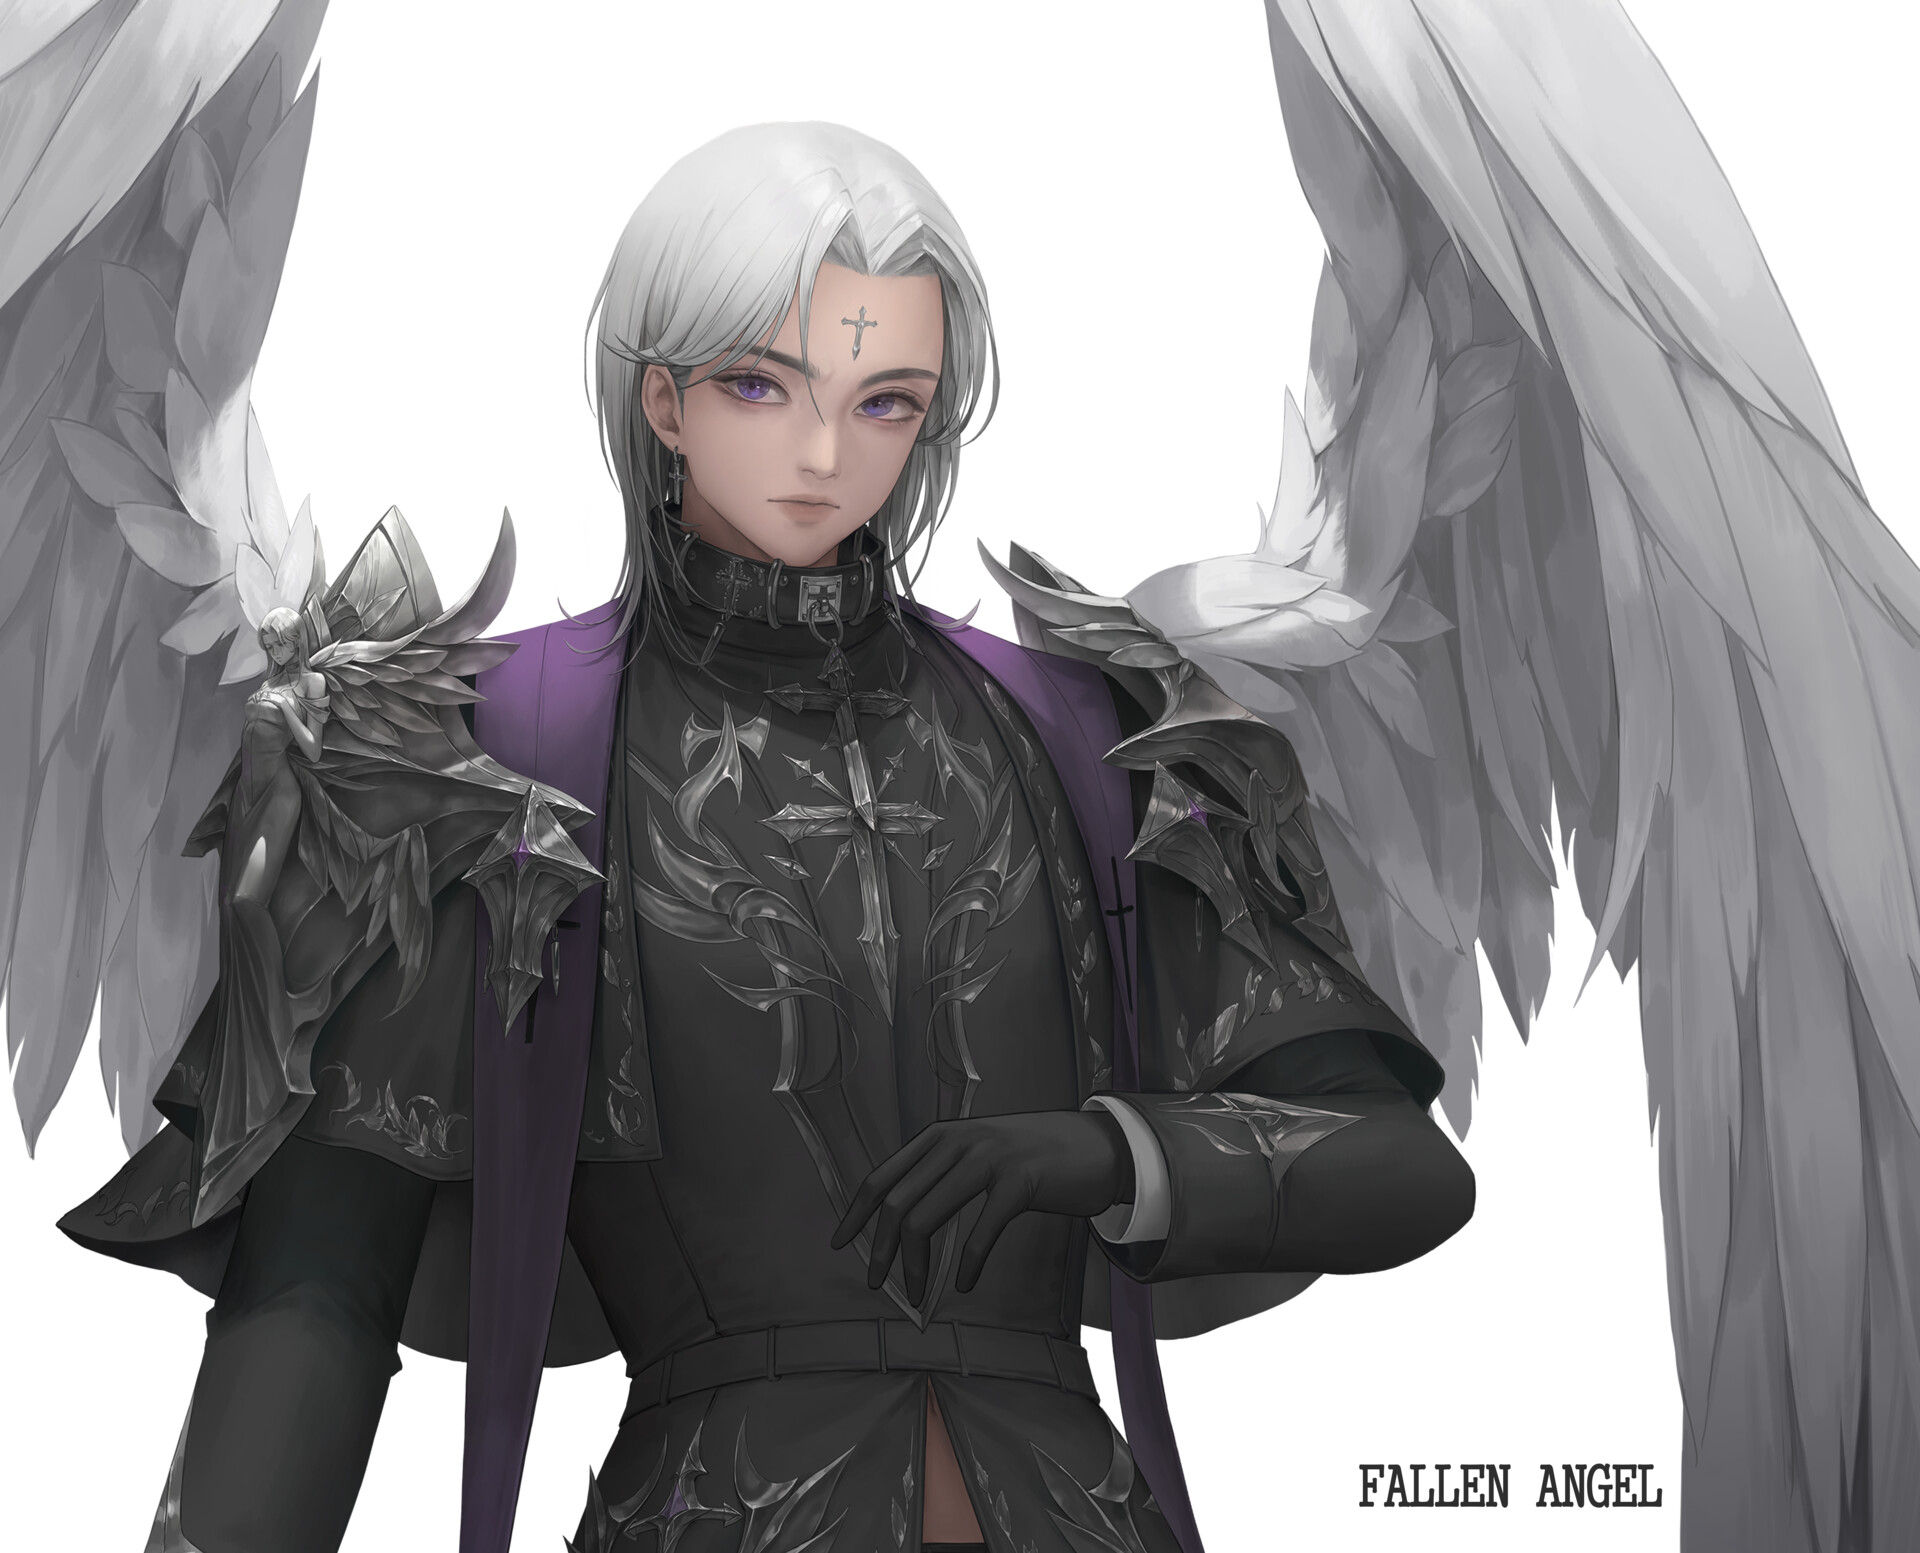 Anime Fallen Angel GIFs | Tenor